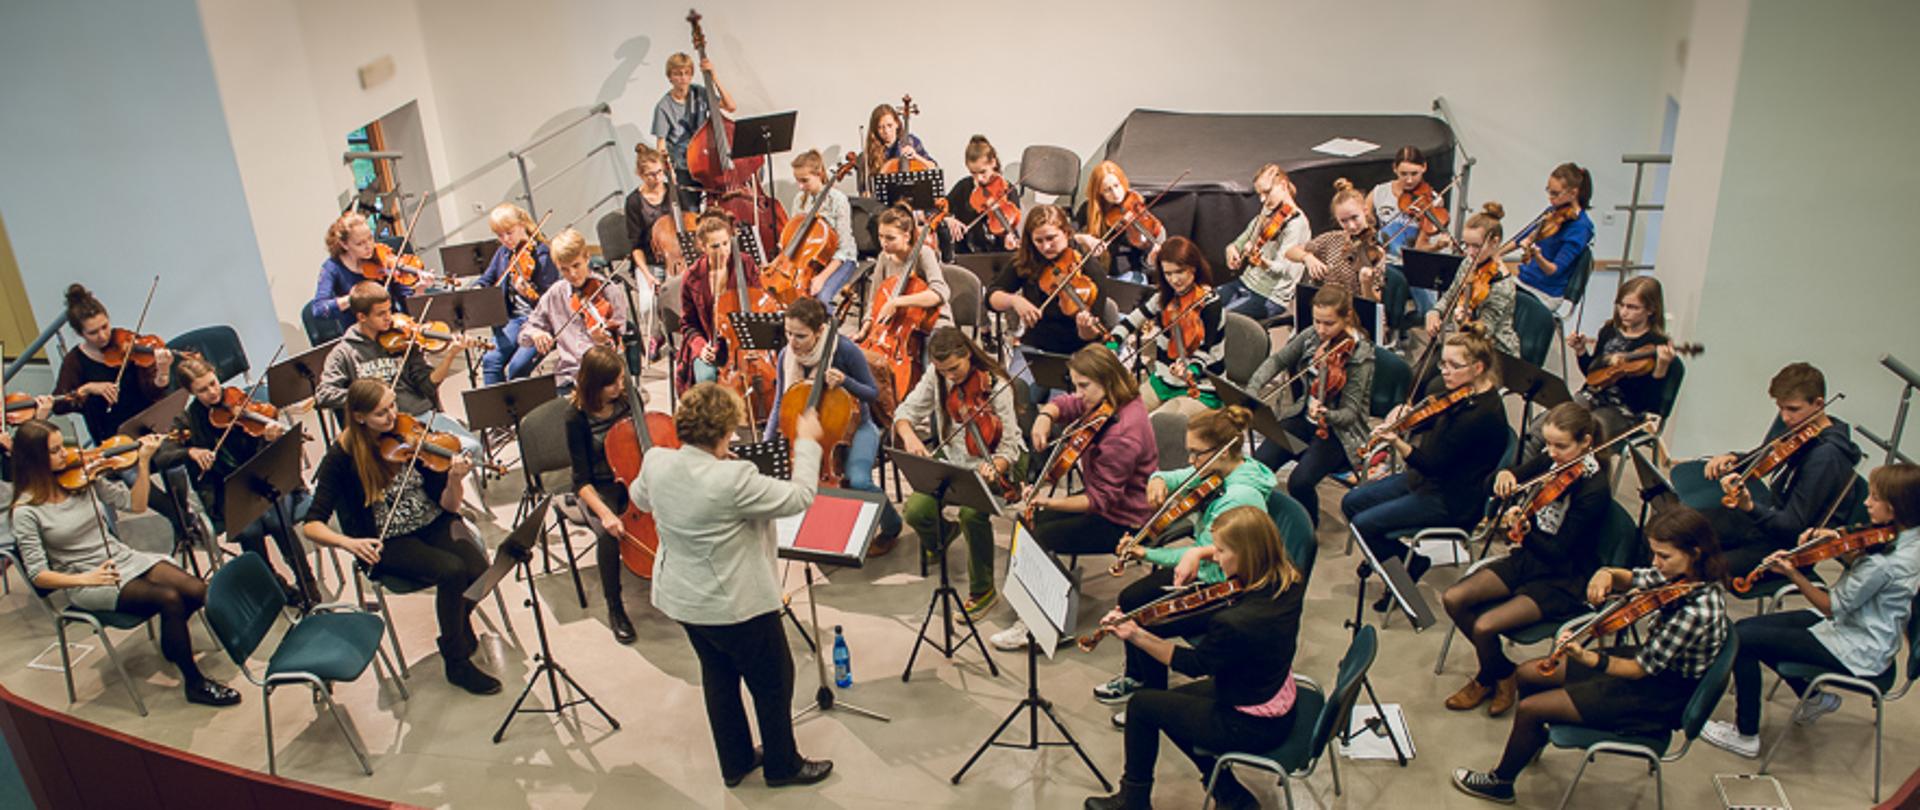 Zdjęcie przedstawia uczniów grających na skrzypcach, altówce, wiolonczeli i kontrabasie oraz dyrygenta podczas próby orkiestry smyczkowej szkoły muzycznej II stopnia w sali koncertowej (zdjęcie kolorowe)